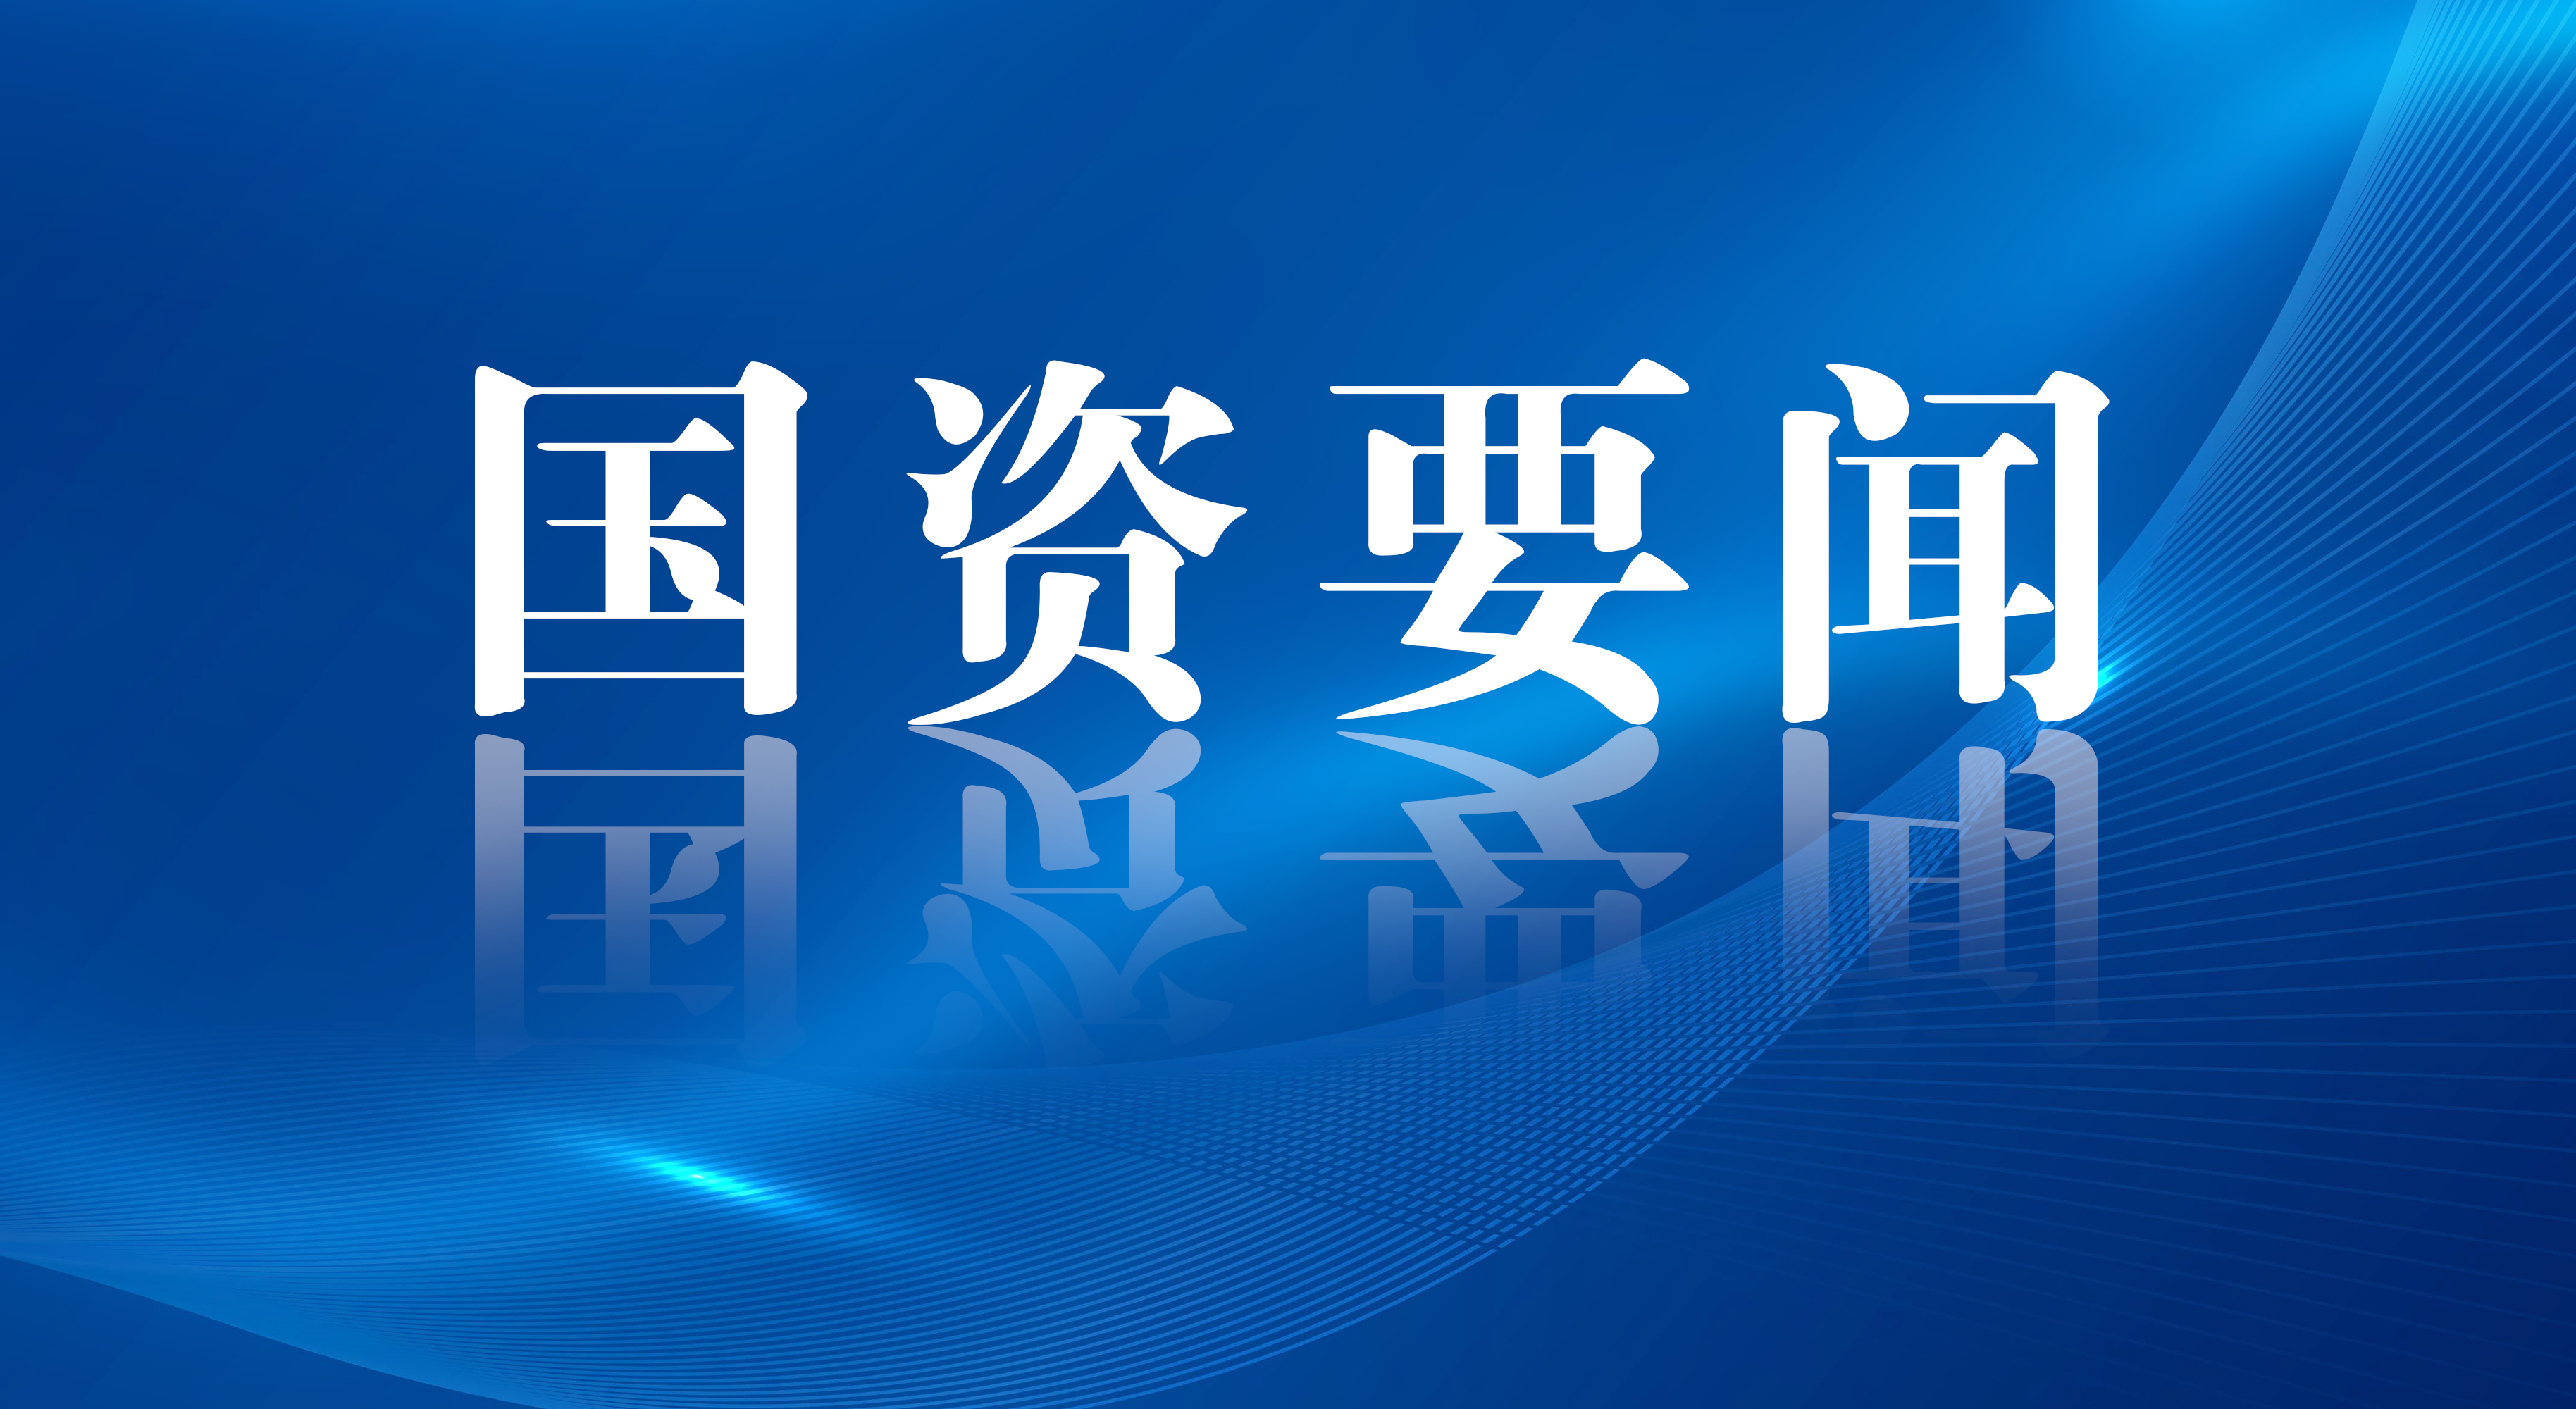 翁杰明、彭华岗出席“中国这十年”系列主题新闻发布会 介绍新时代国资国企改革发展情况